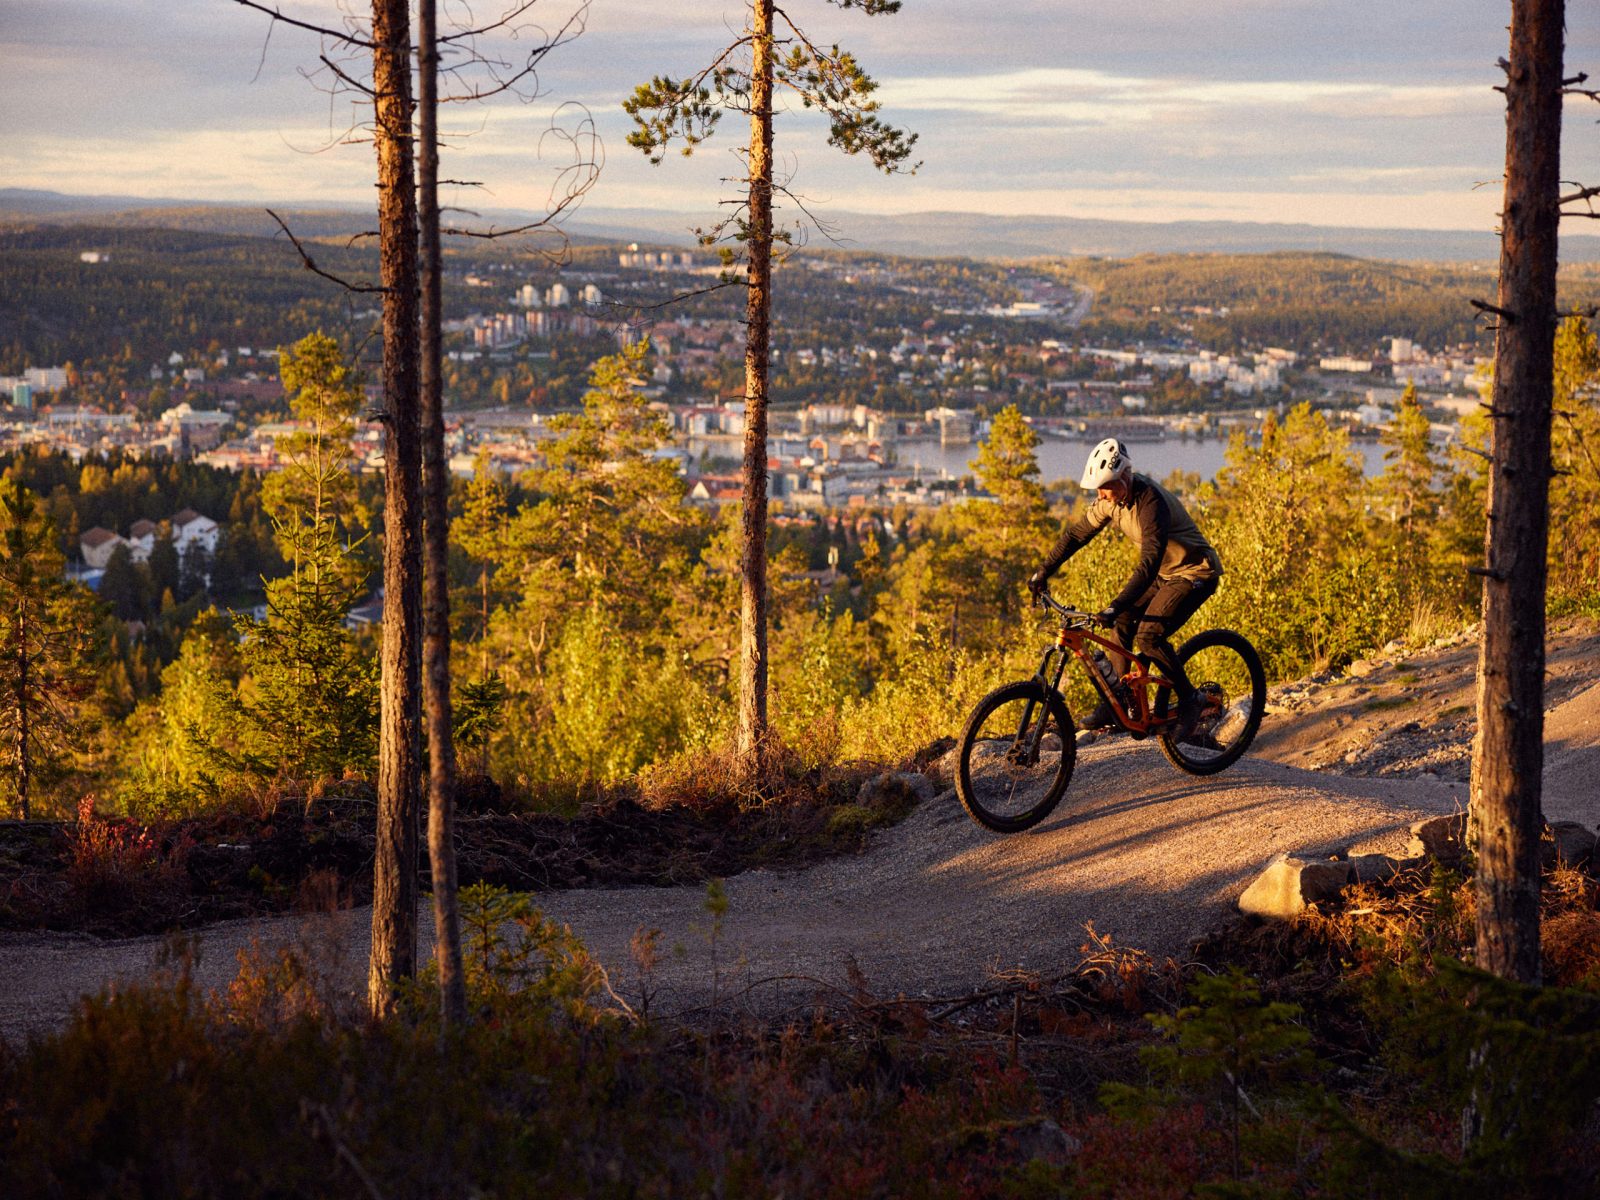 södra-berget-bike-arena-sundsvall-sweden-by-bike